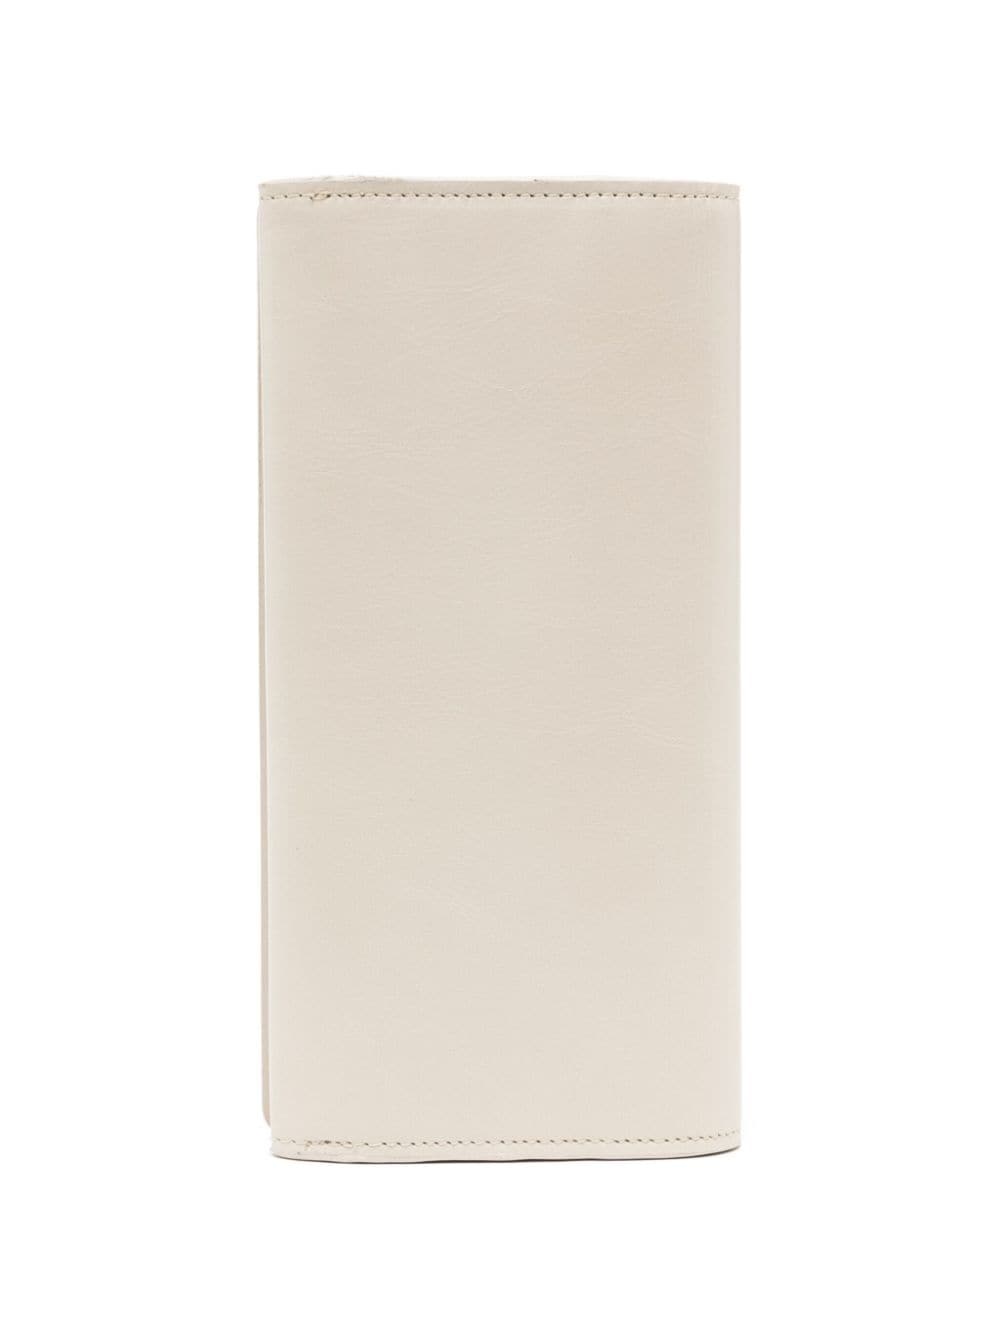 debossed-logo leather wallet - 2